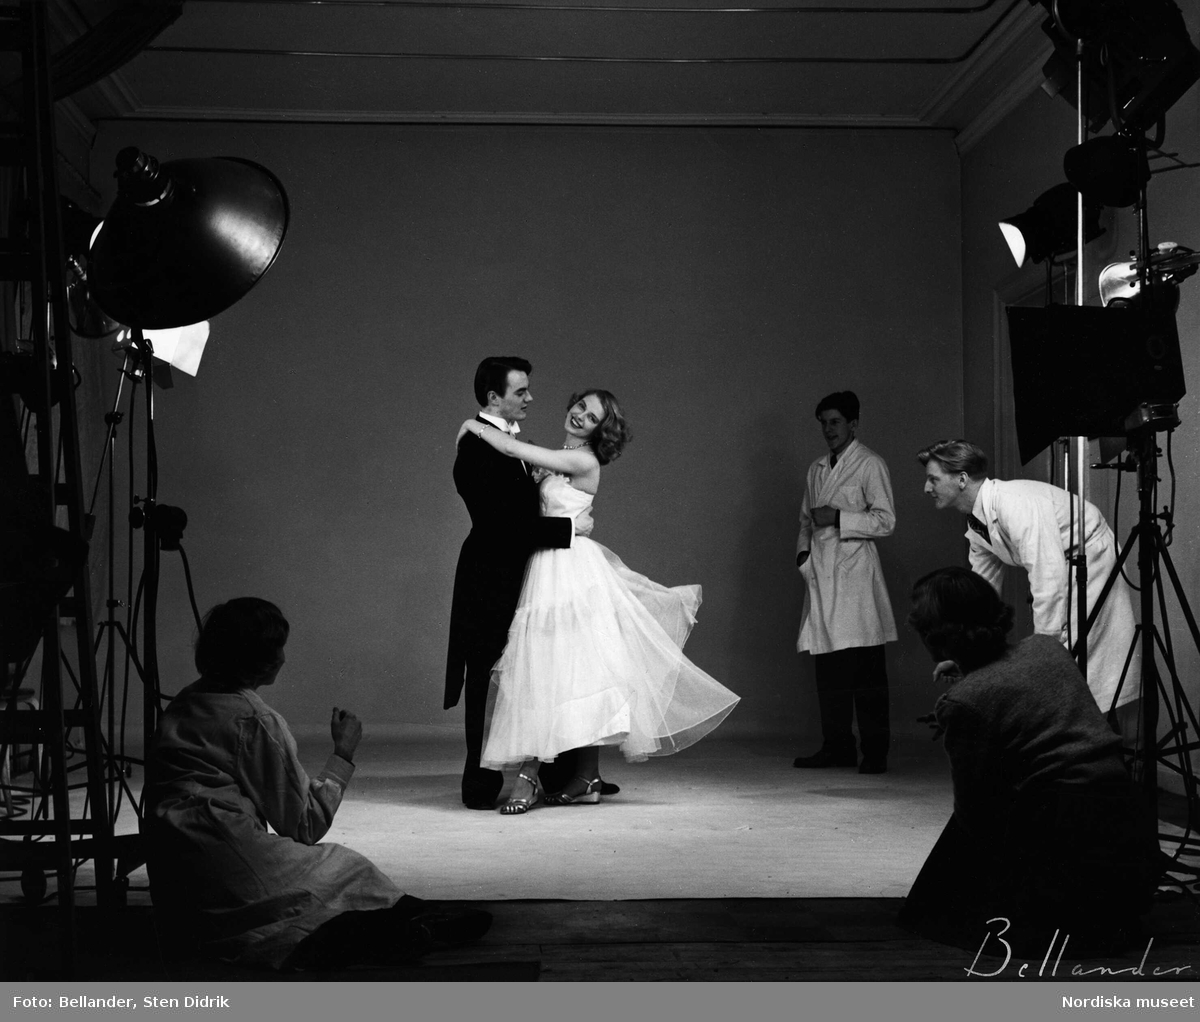 Modefotografering i studion. Ett par dansar omgivna av studiolampor och assistenter.